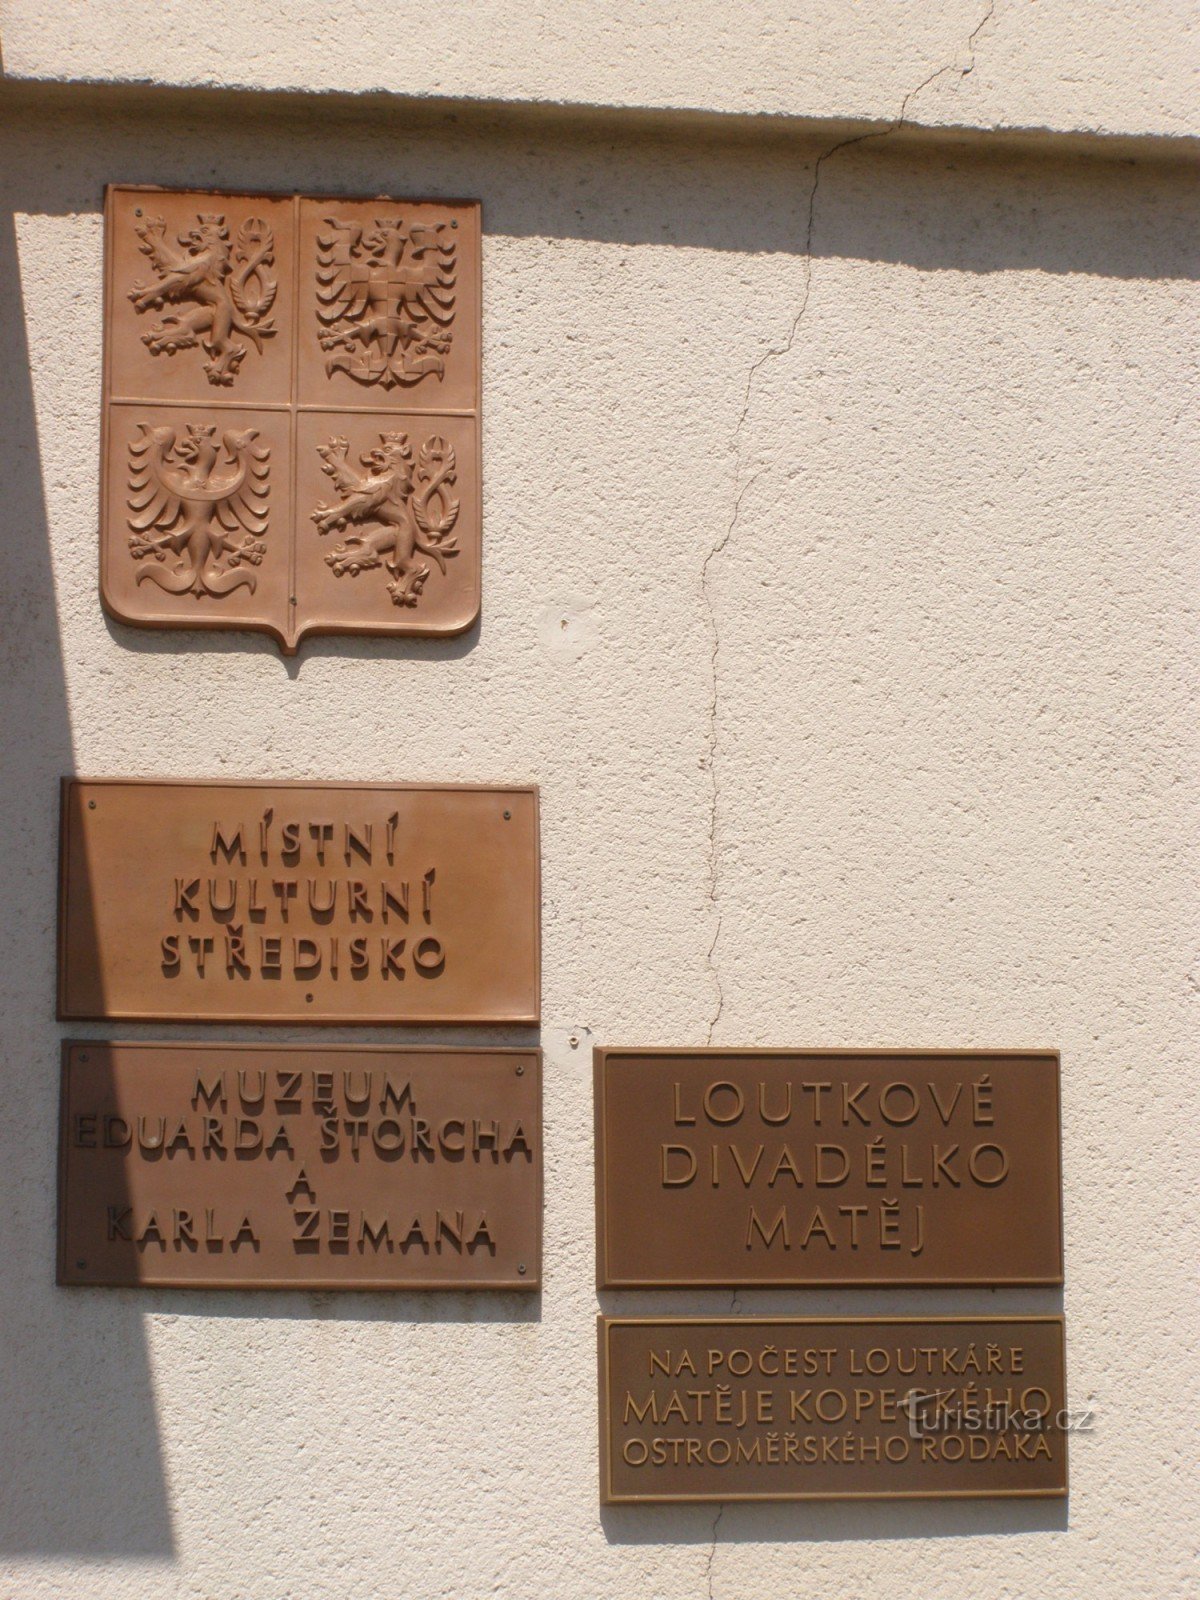 Ostroměř - エドゥアルト・シュトルヒとカレル・ゼマンの博物館